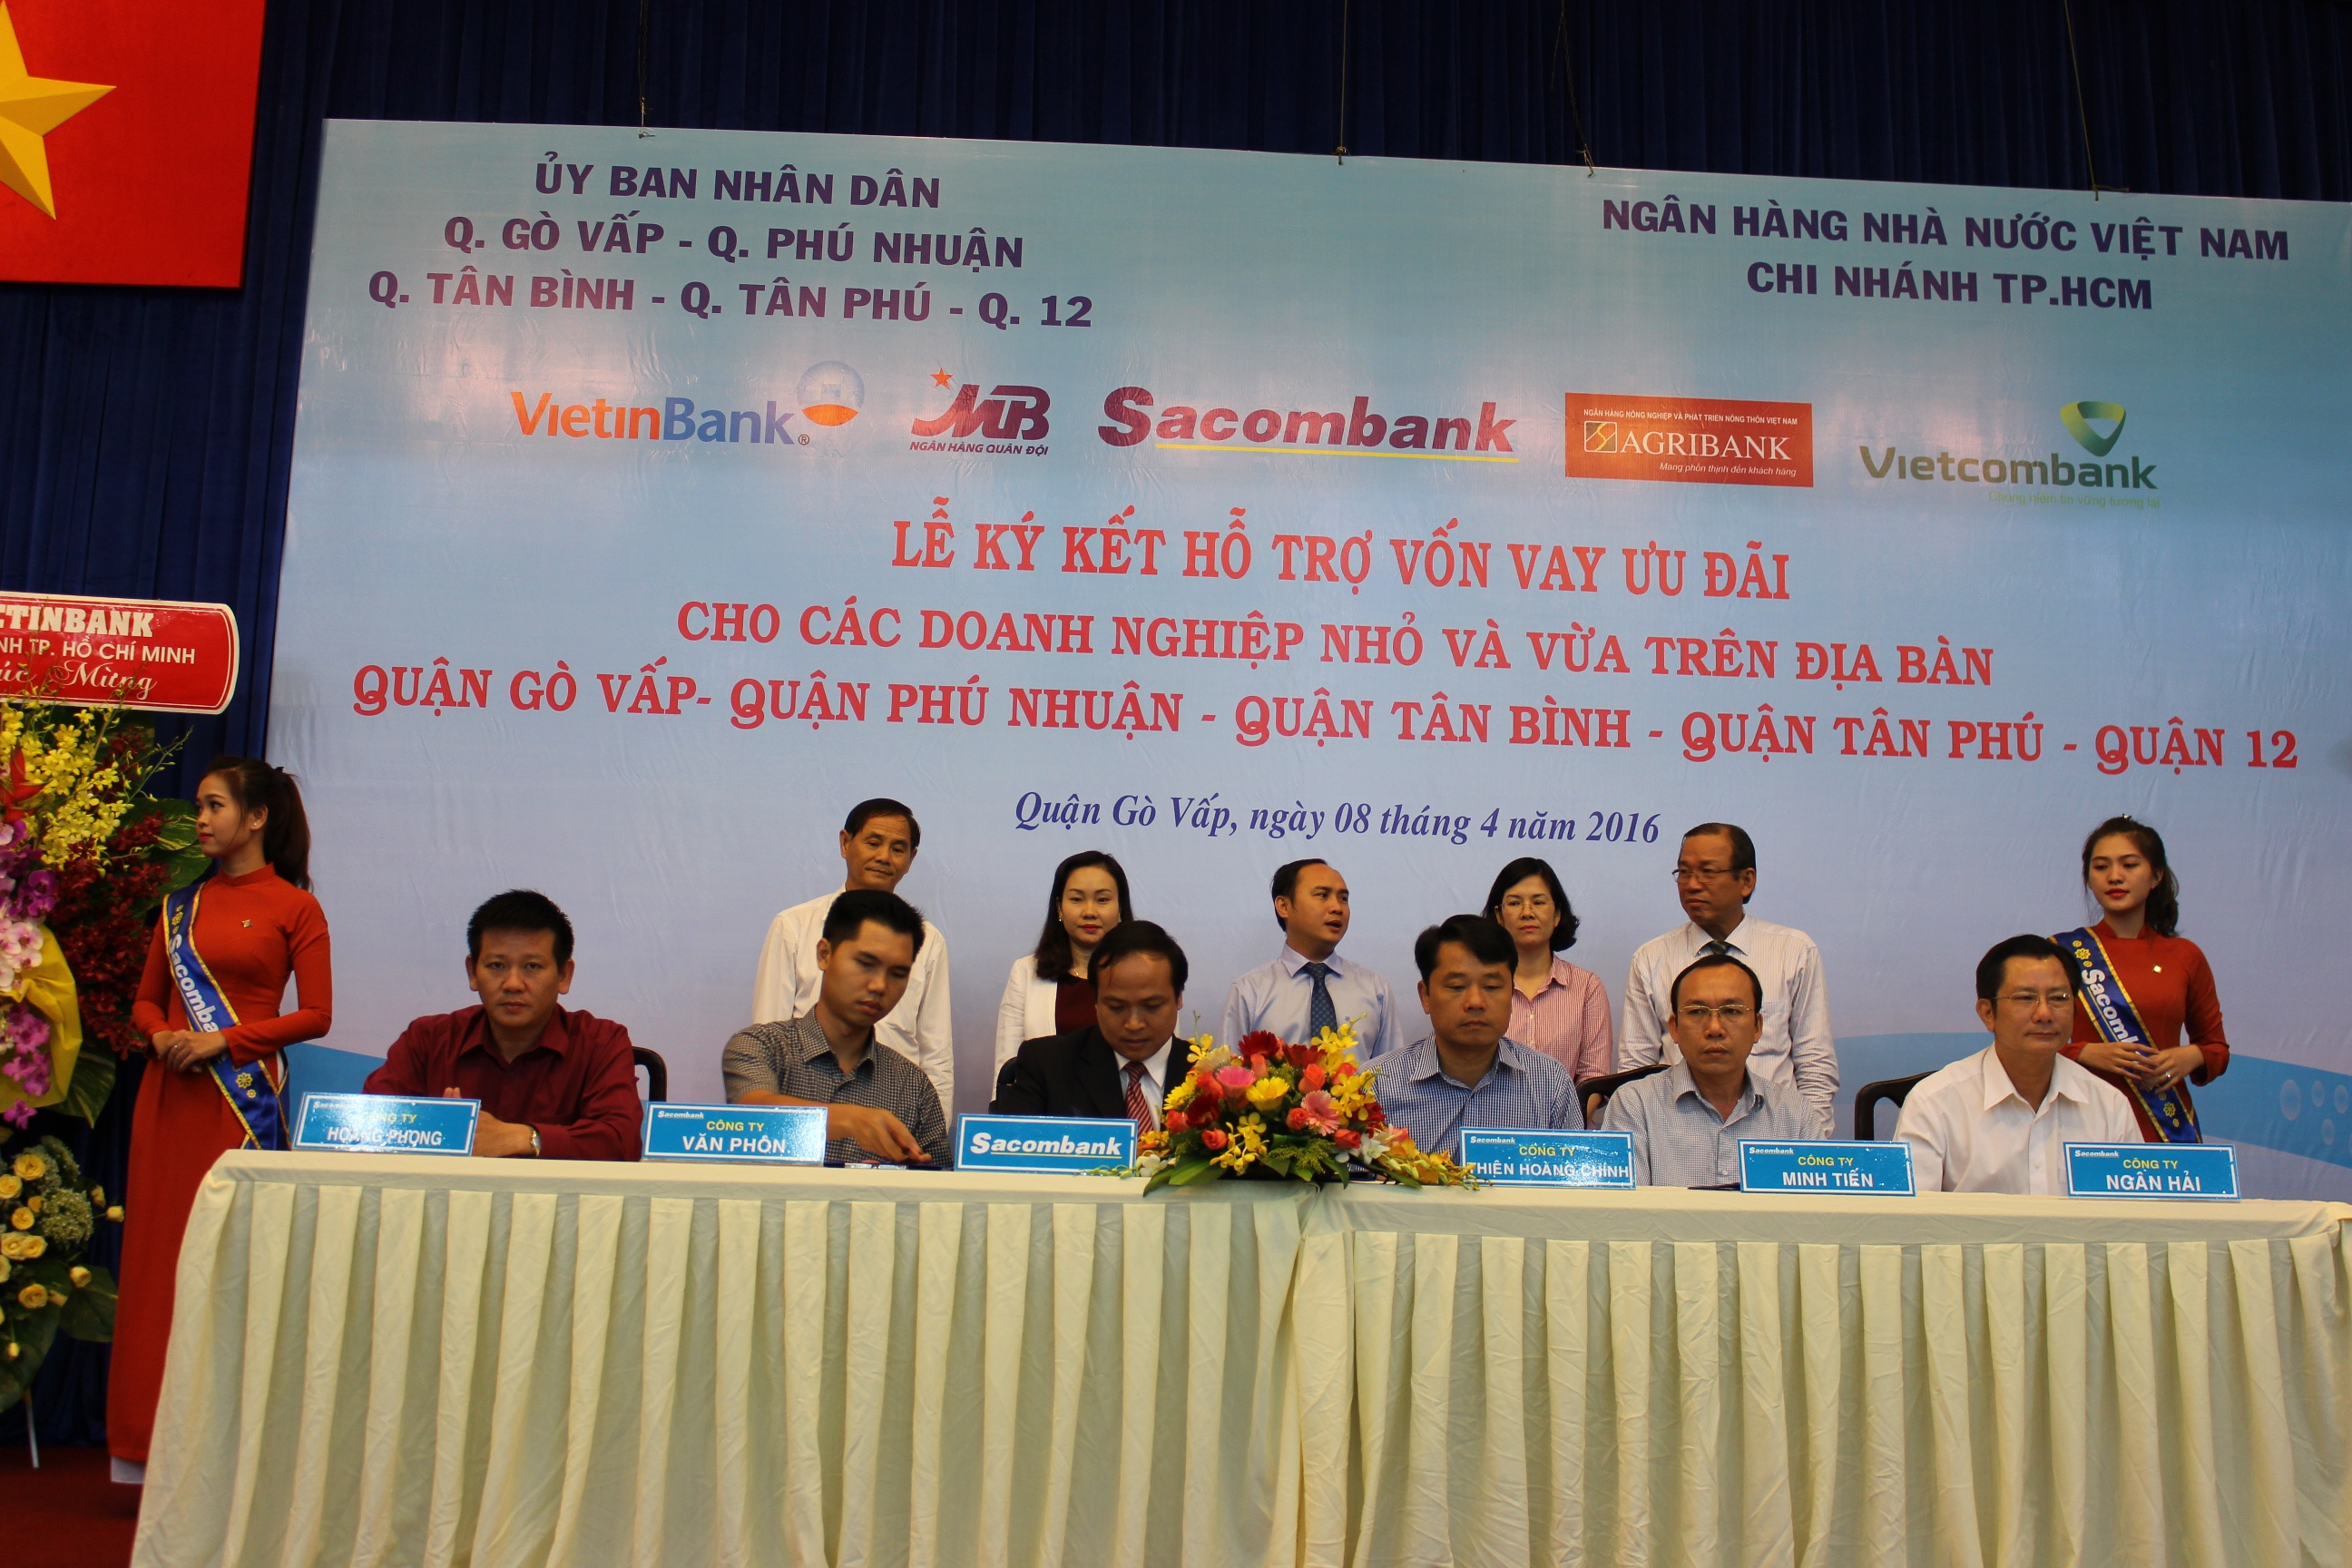 Sacombank dành 980 tỷ đồng cho vay ưu đãi tại quận 12, quận Gò Vấp, quận Tân Bình, quận Tân Phú, quận Phú Nhuận (Tp.HCM)